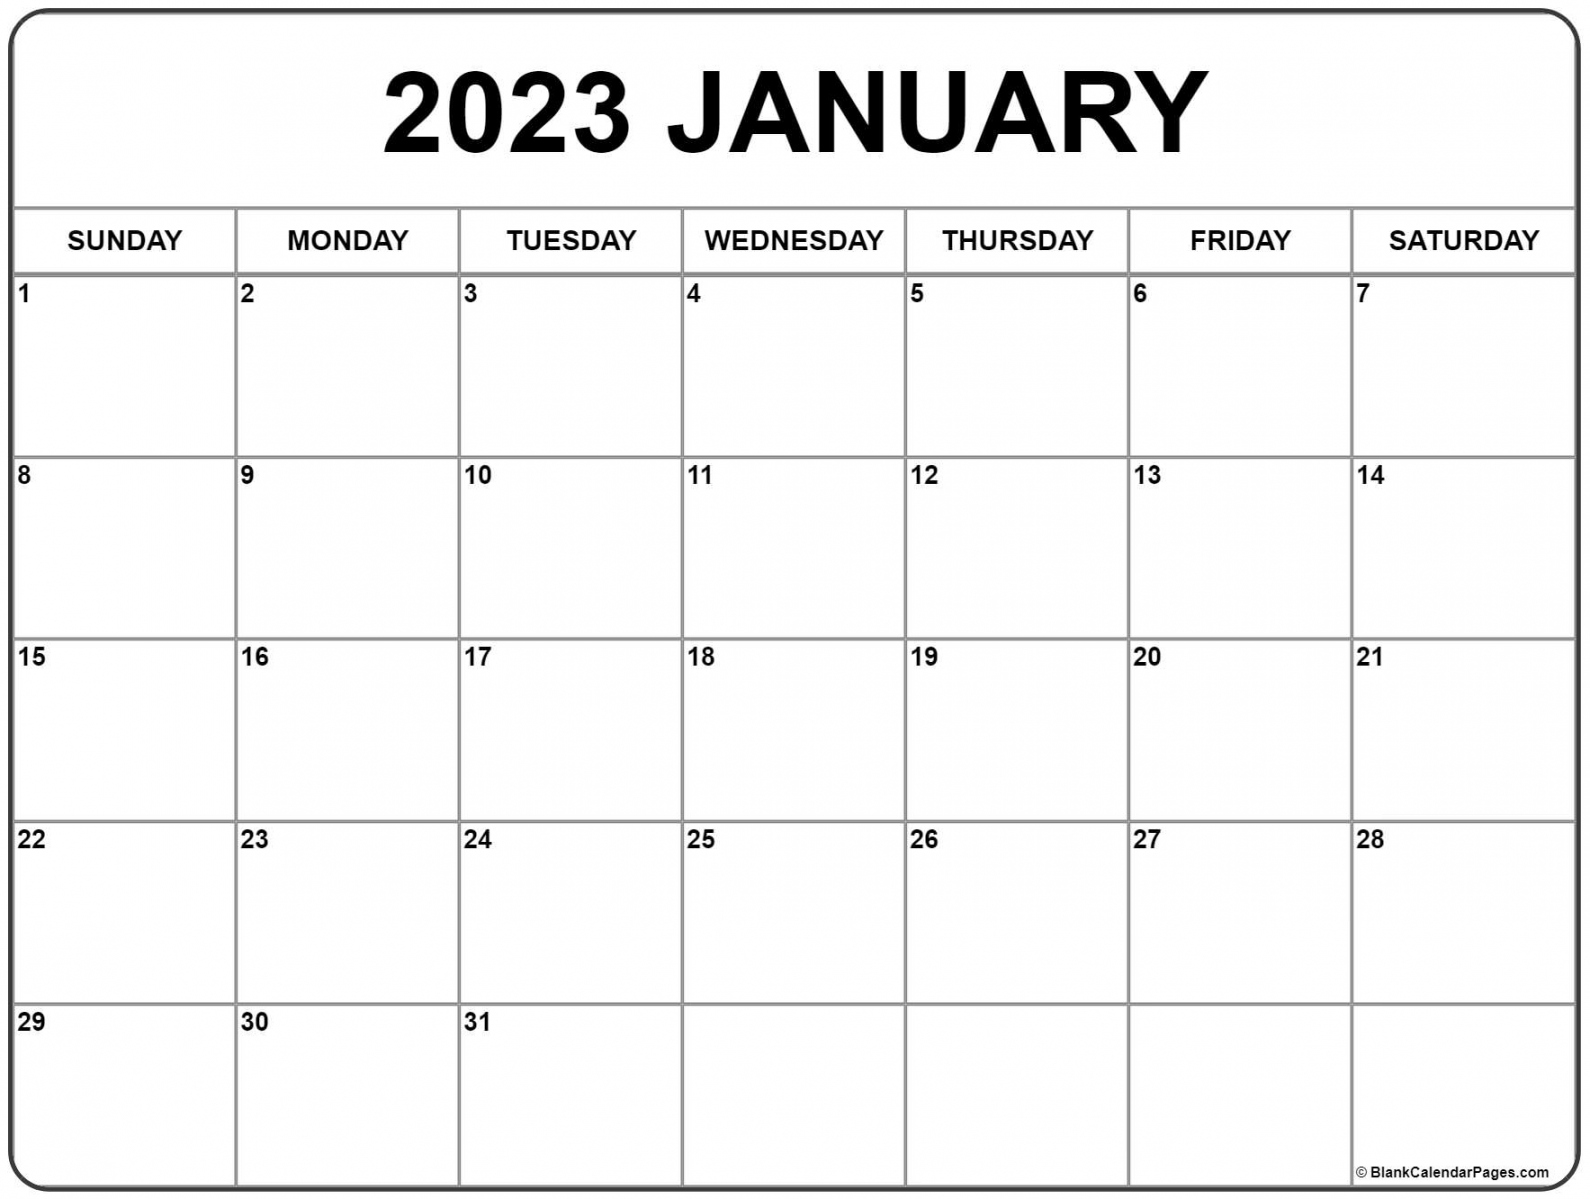 2023 Calendar Printable Free - Printable - January  calendar  free printable calendar